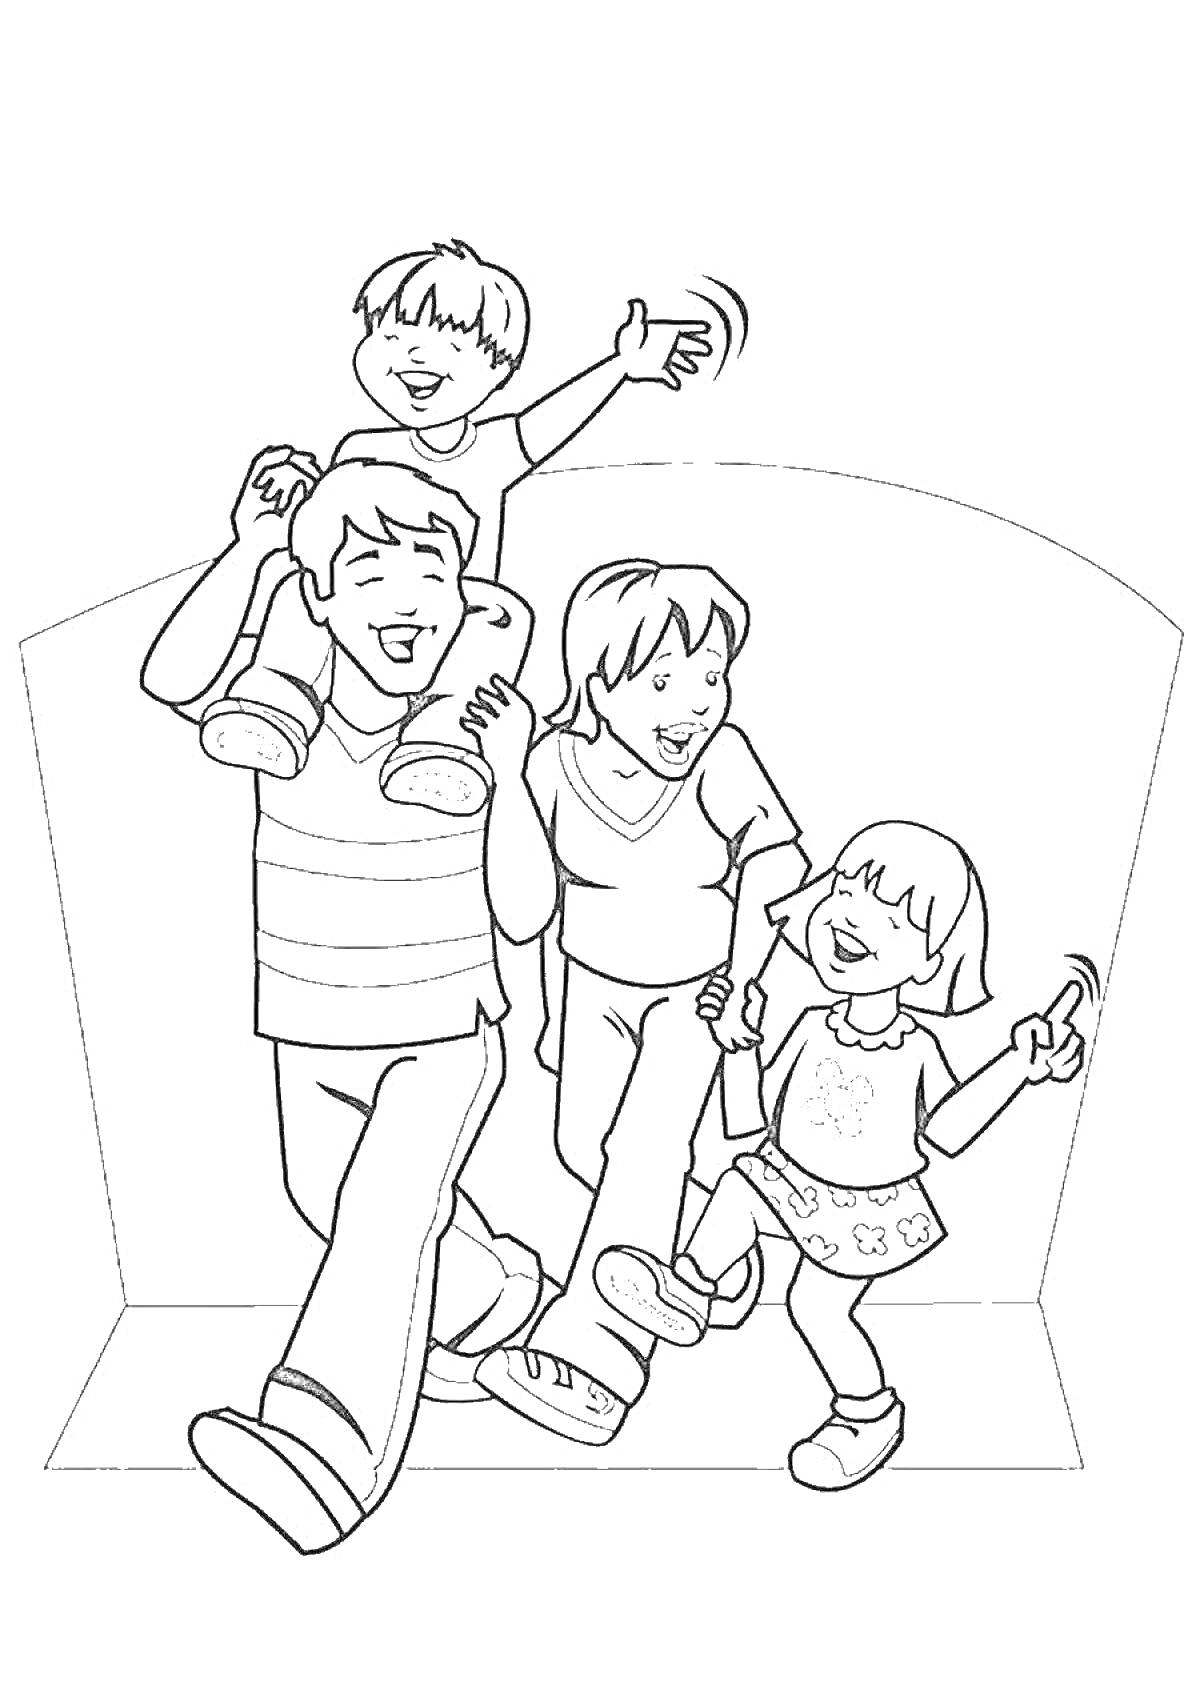 Раскраска Семья с двумя детьми, мальчиком на плечах у отца и девочкой держащей за руку маму, все идут с улыбками